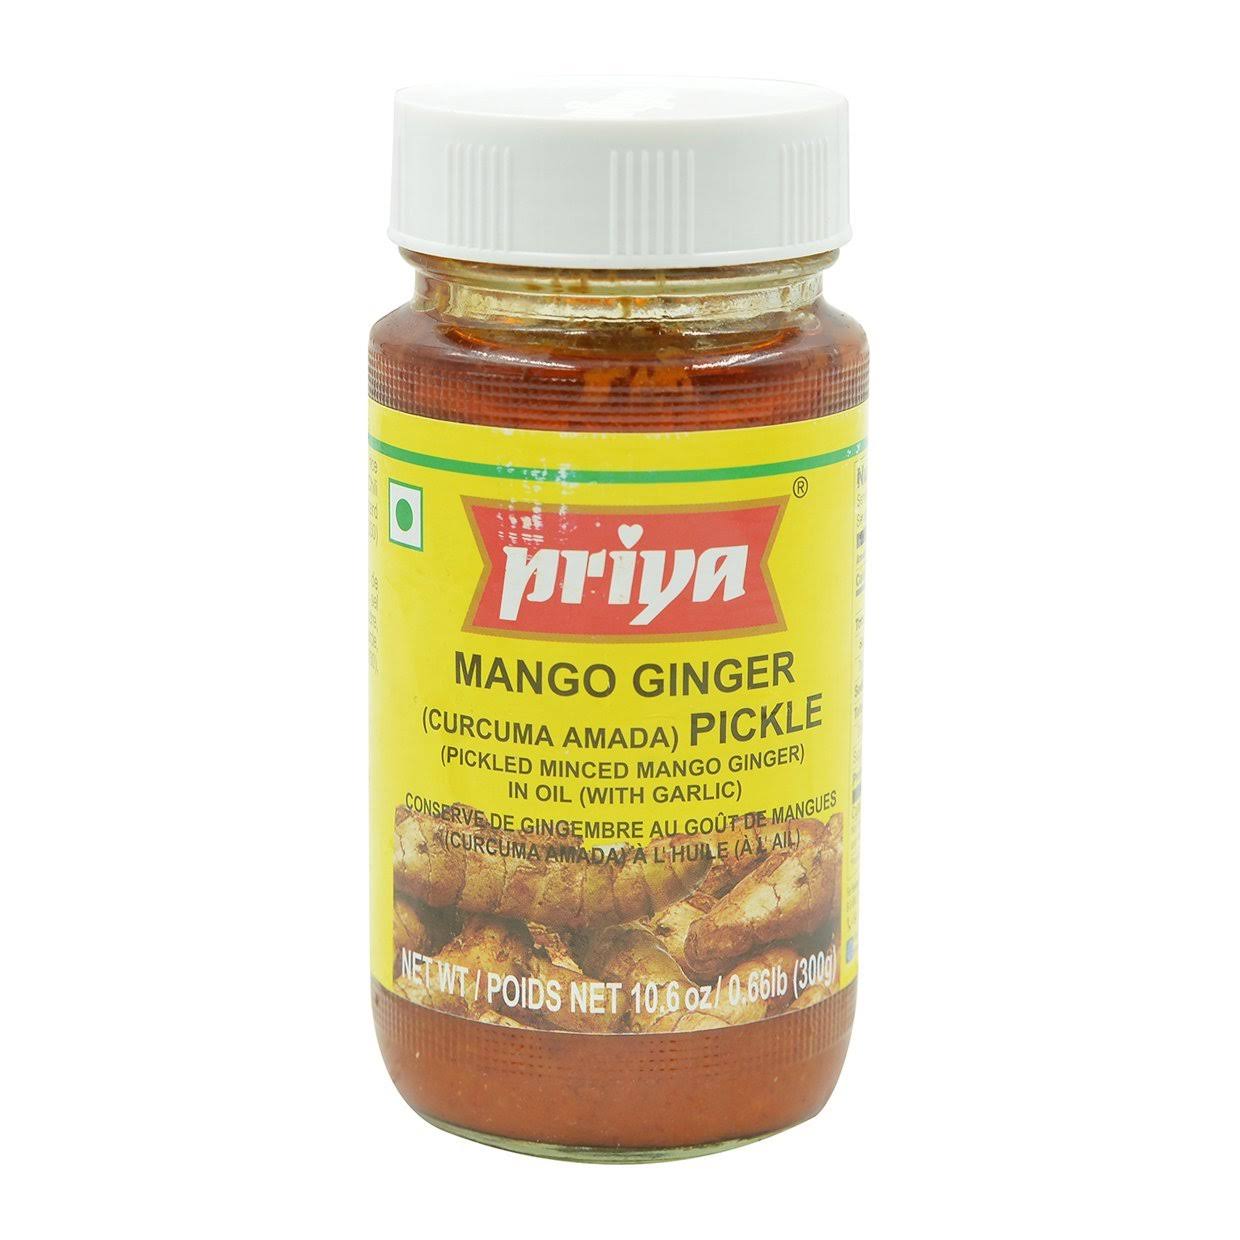 Priya Mango Ginger Pickle with Garlic - 300g